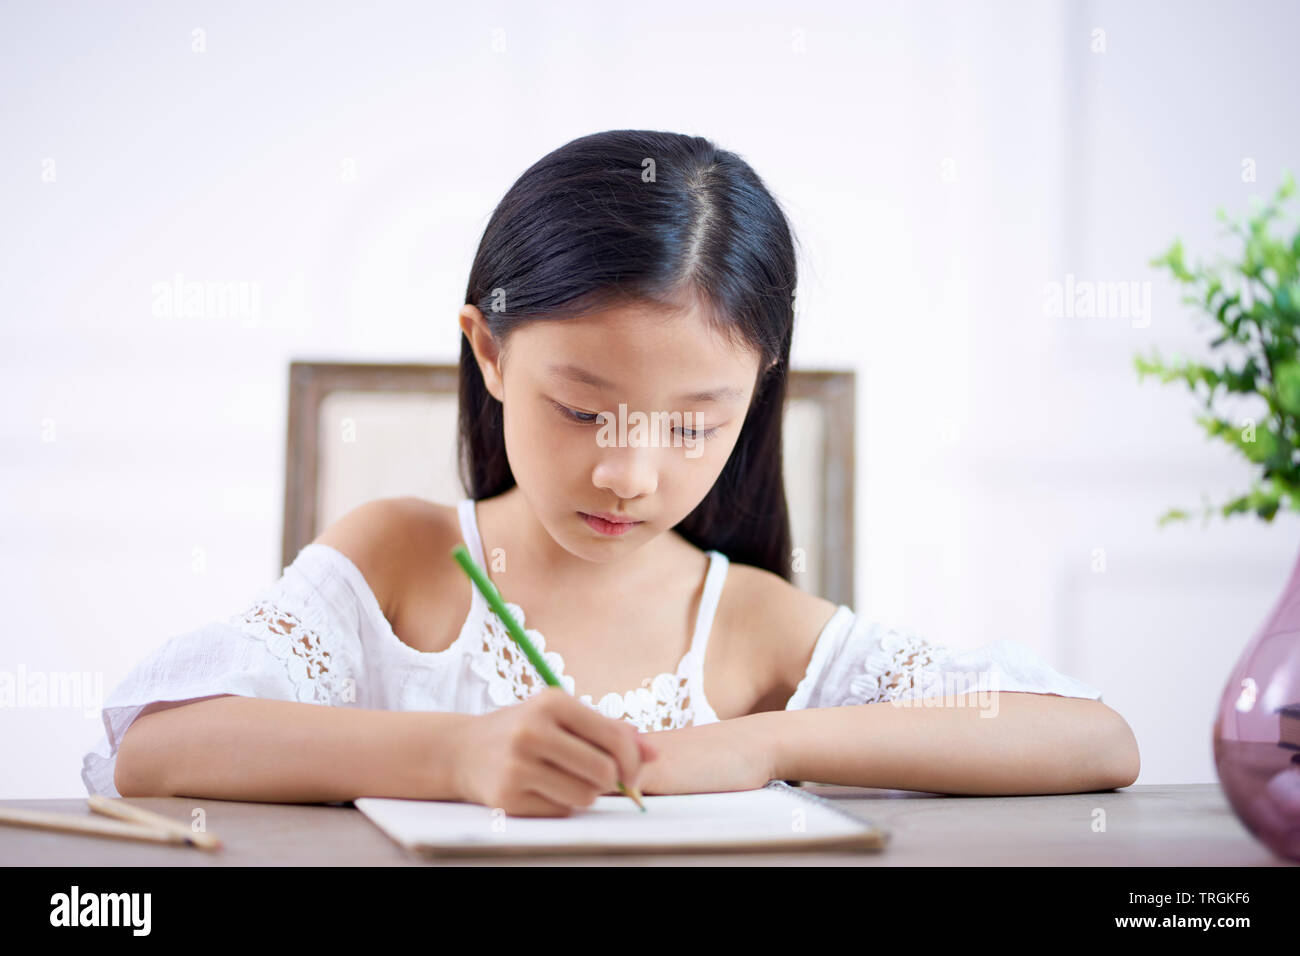 Belle petite fille asiatique avec de longs cheveux noirs assis à 24 dans sa chambre à écrire ou dessiner sur le livre de note Banque D'Images